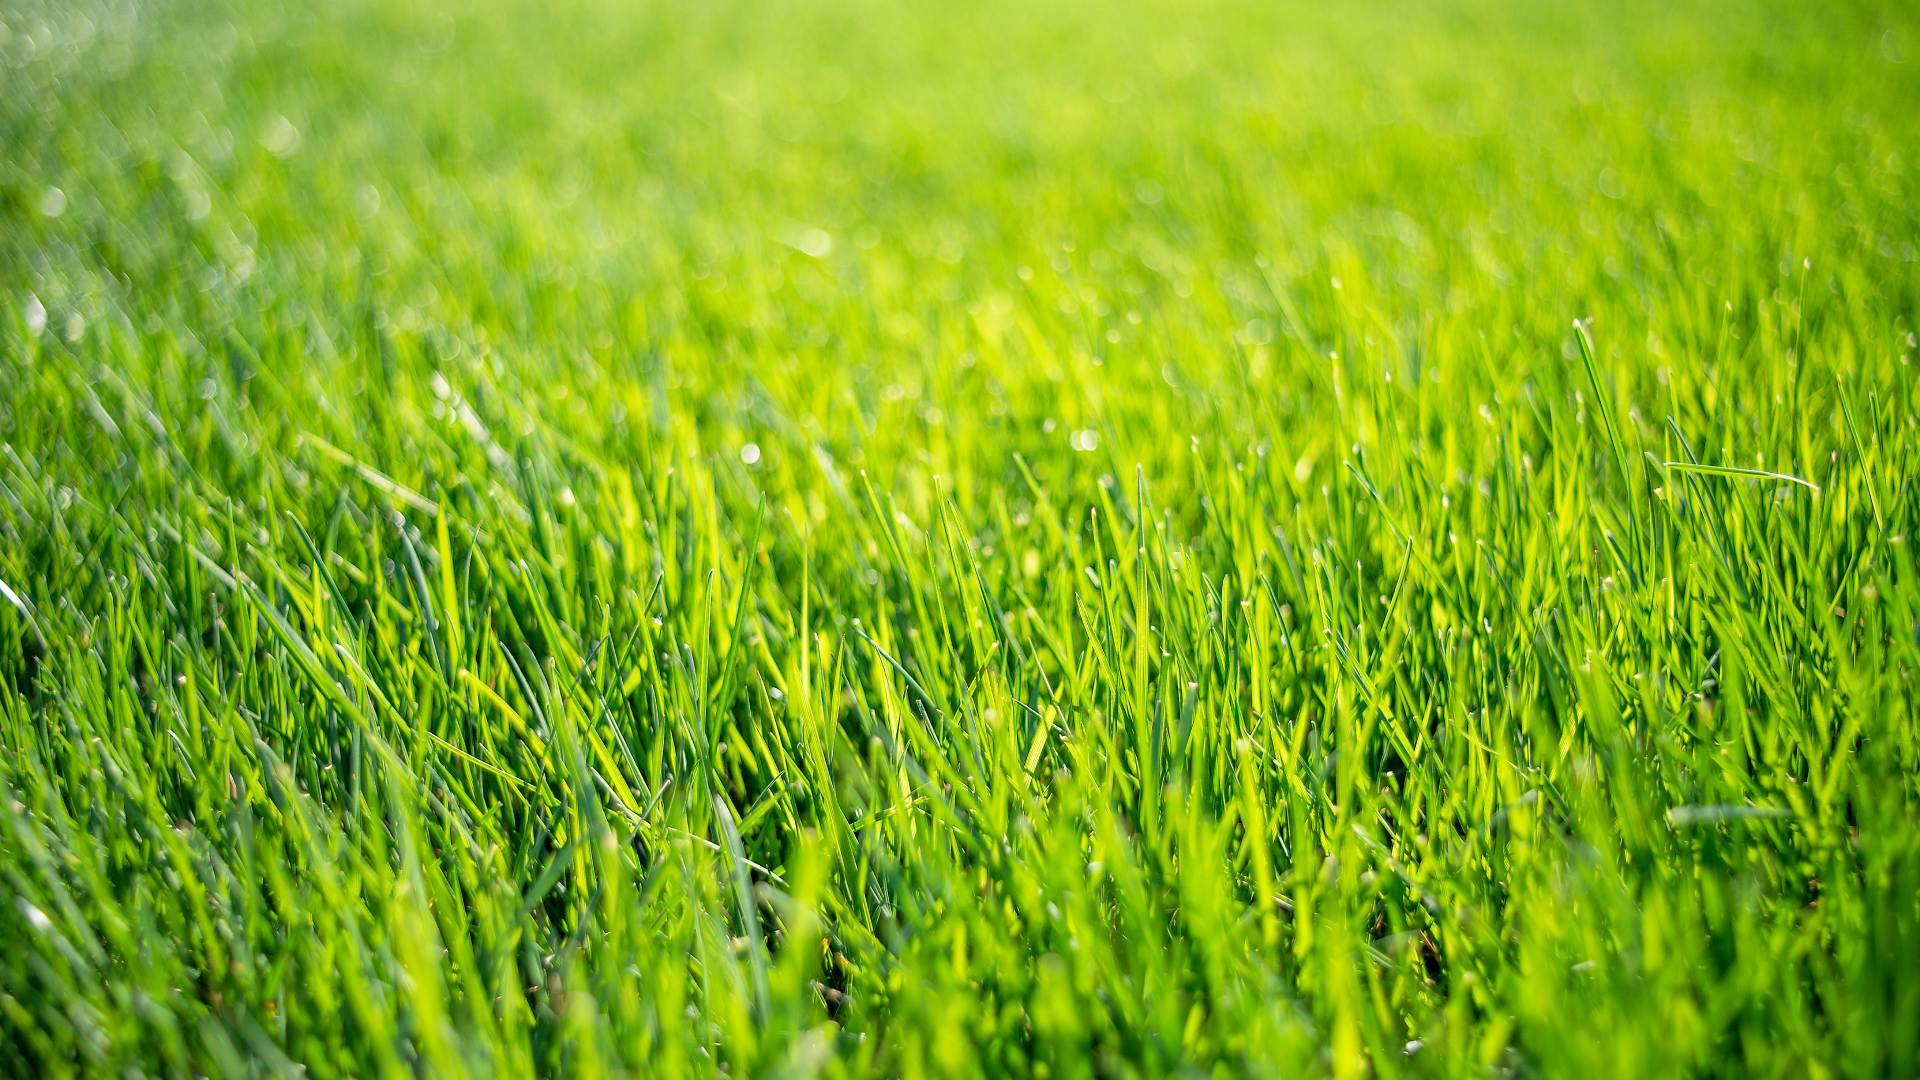 Vibrant green grass blades in field in Miami County, KS.